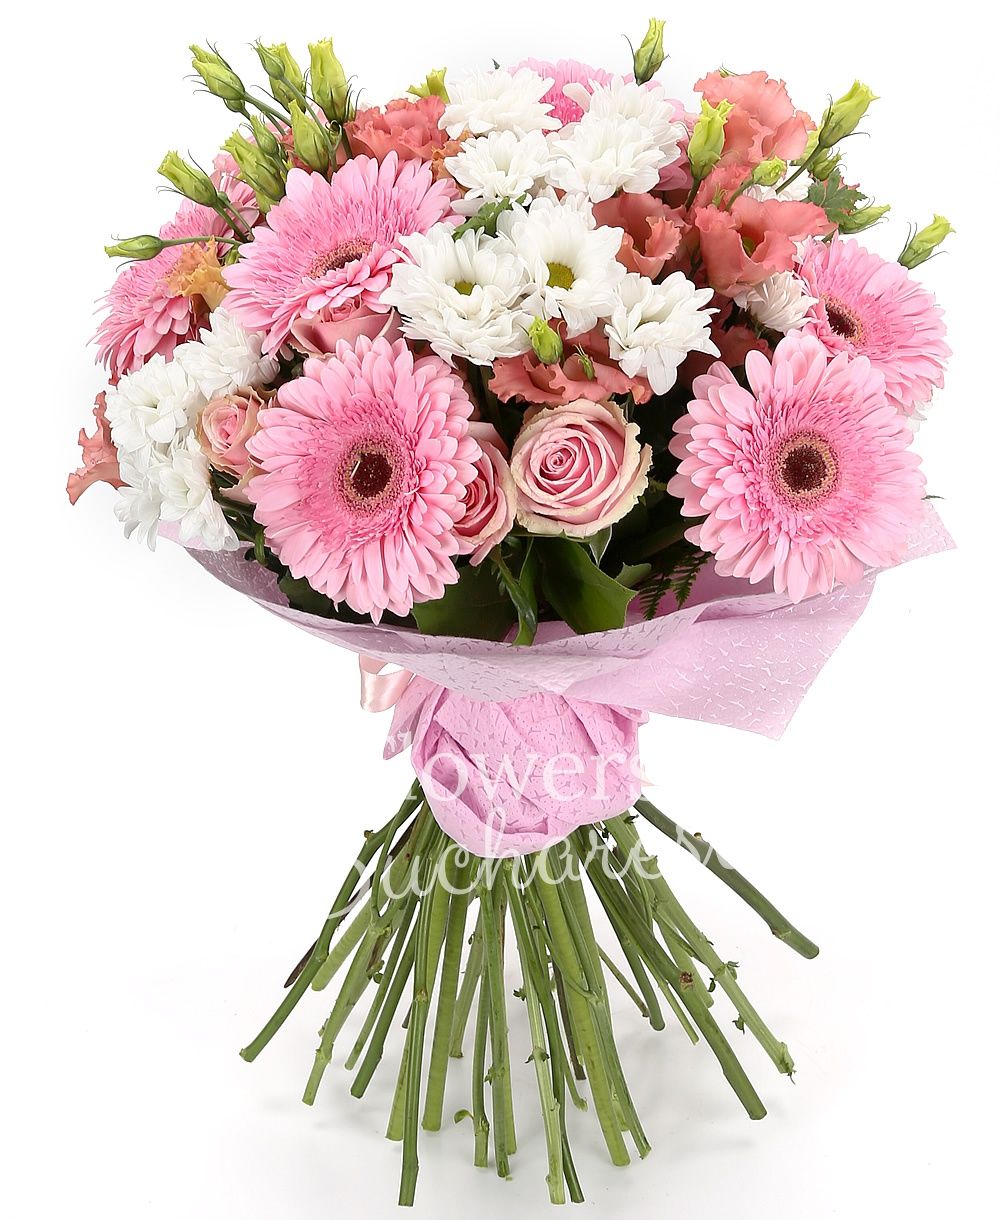 7 pink gerbera, 5 white chrysanthemums 5 pink roses, 5 pink lisianthus, greenery